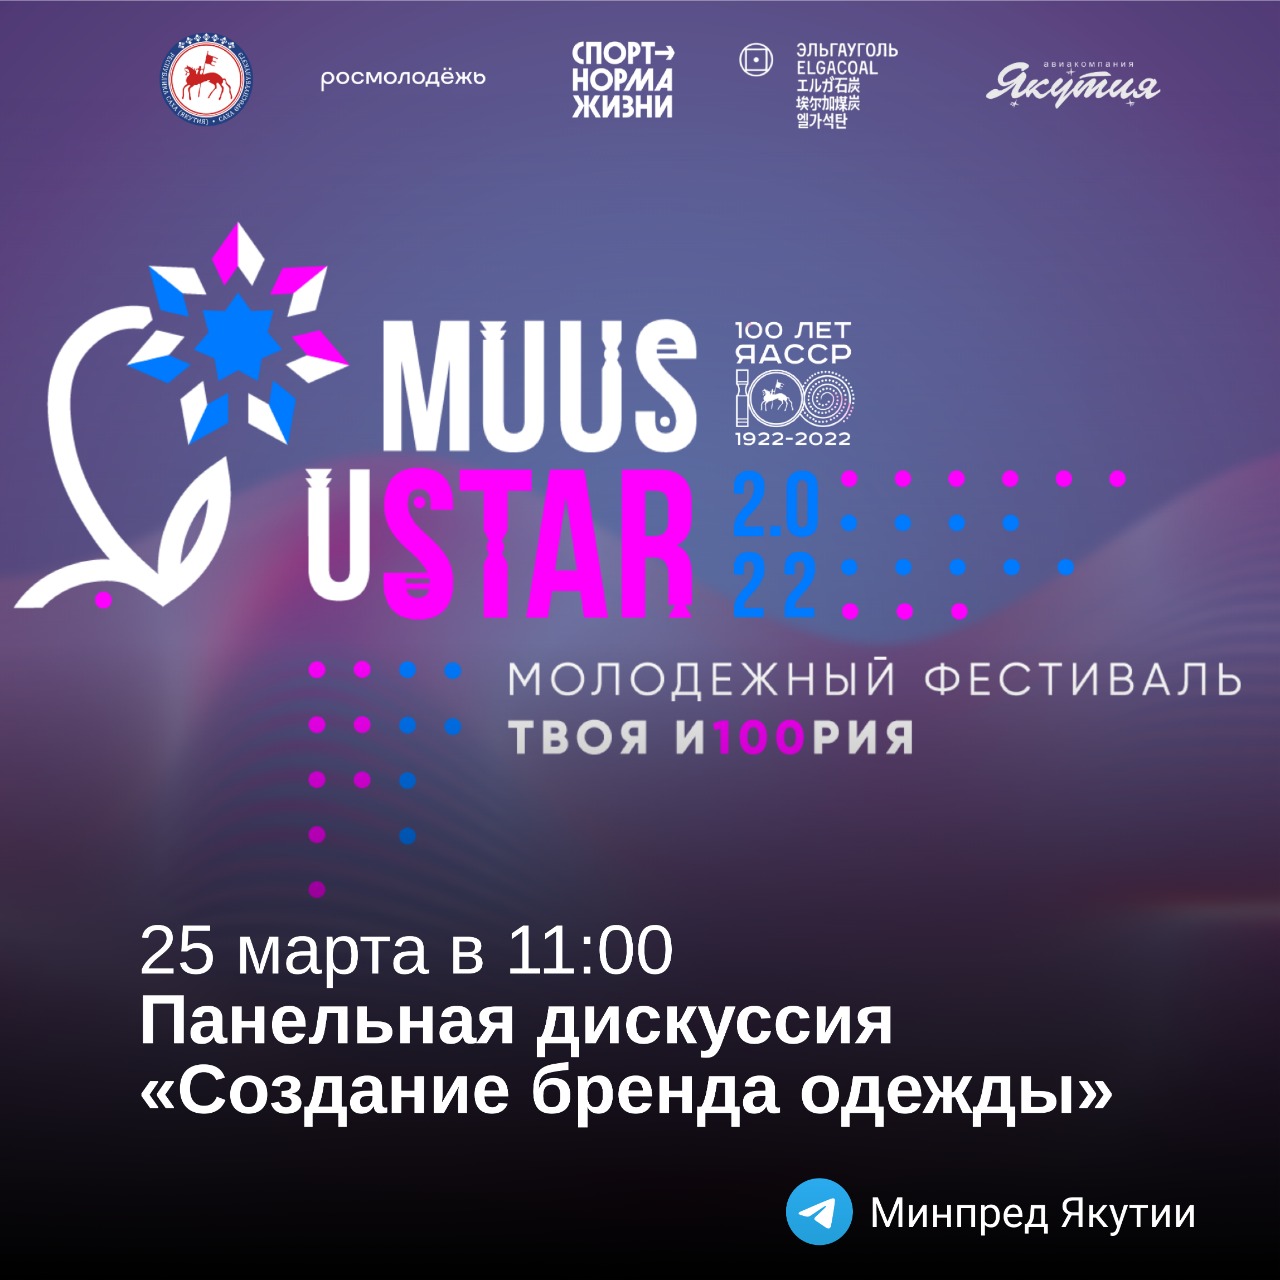 Создание бренда одежды обсудят в рамках фестиваля MUUS uSTAR 25 марта